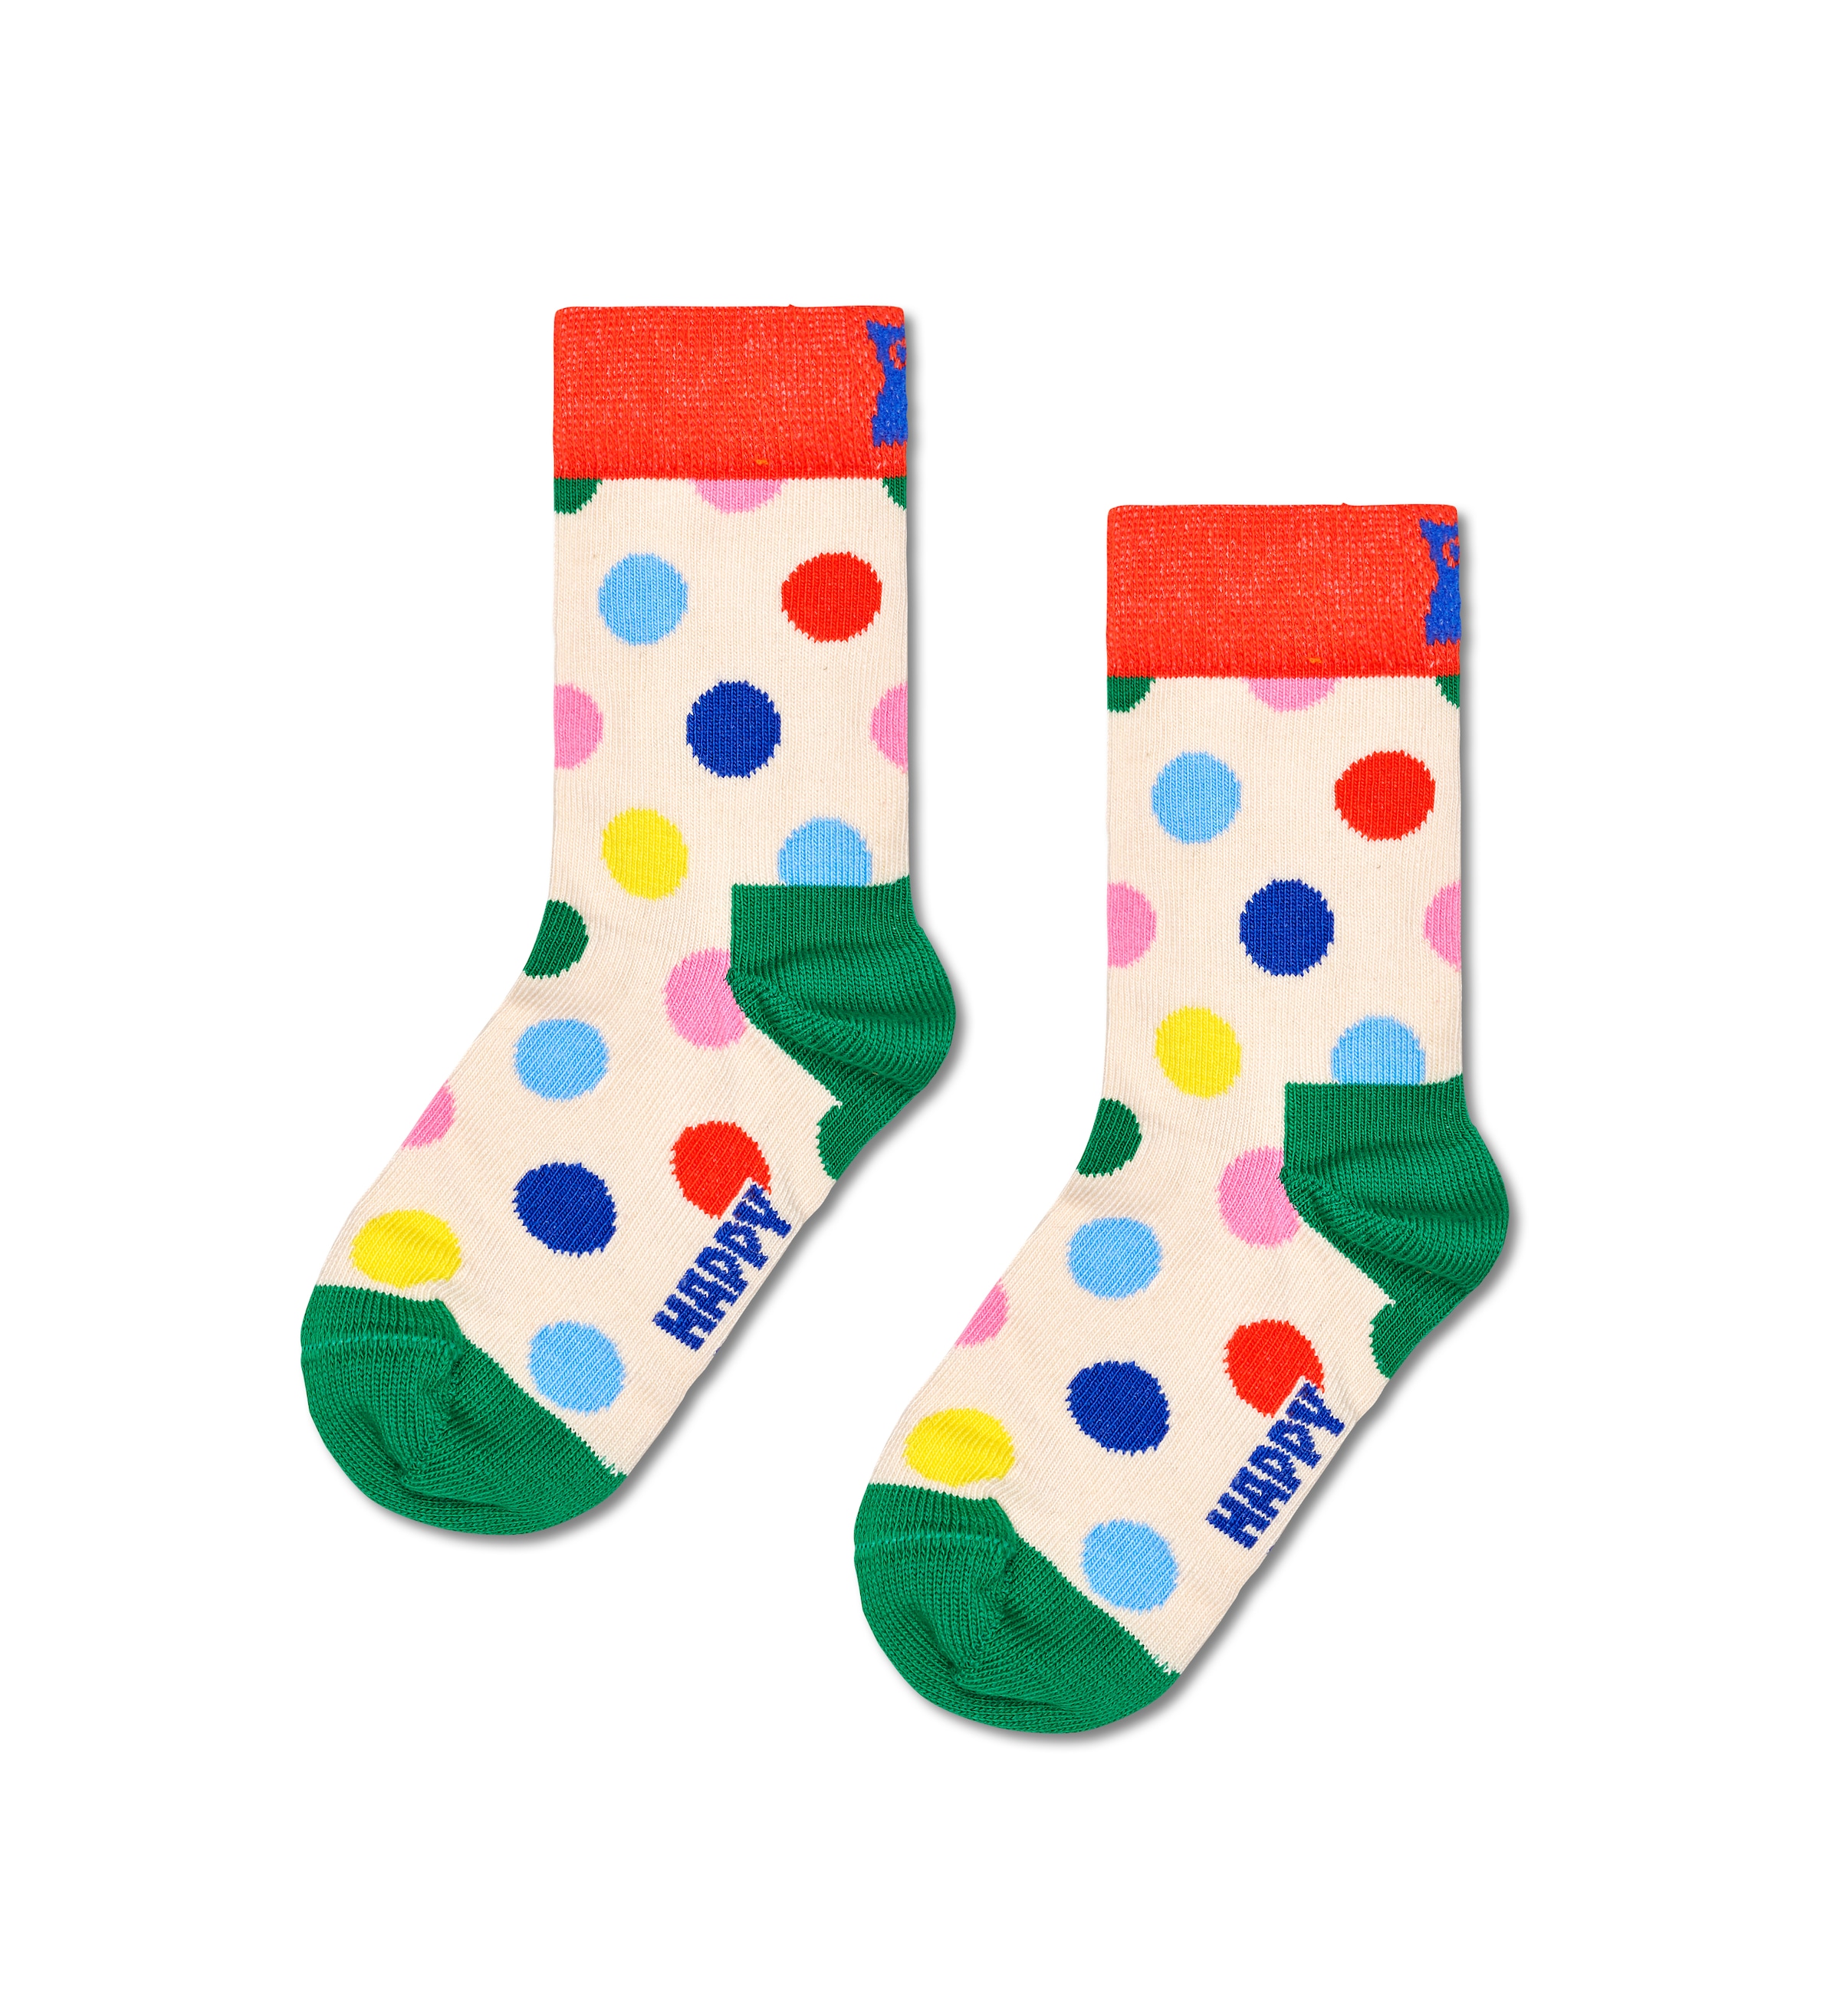 Happy Socks Socken, Birthday Gift Set